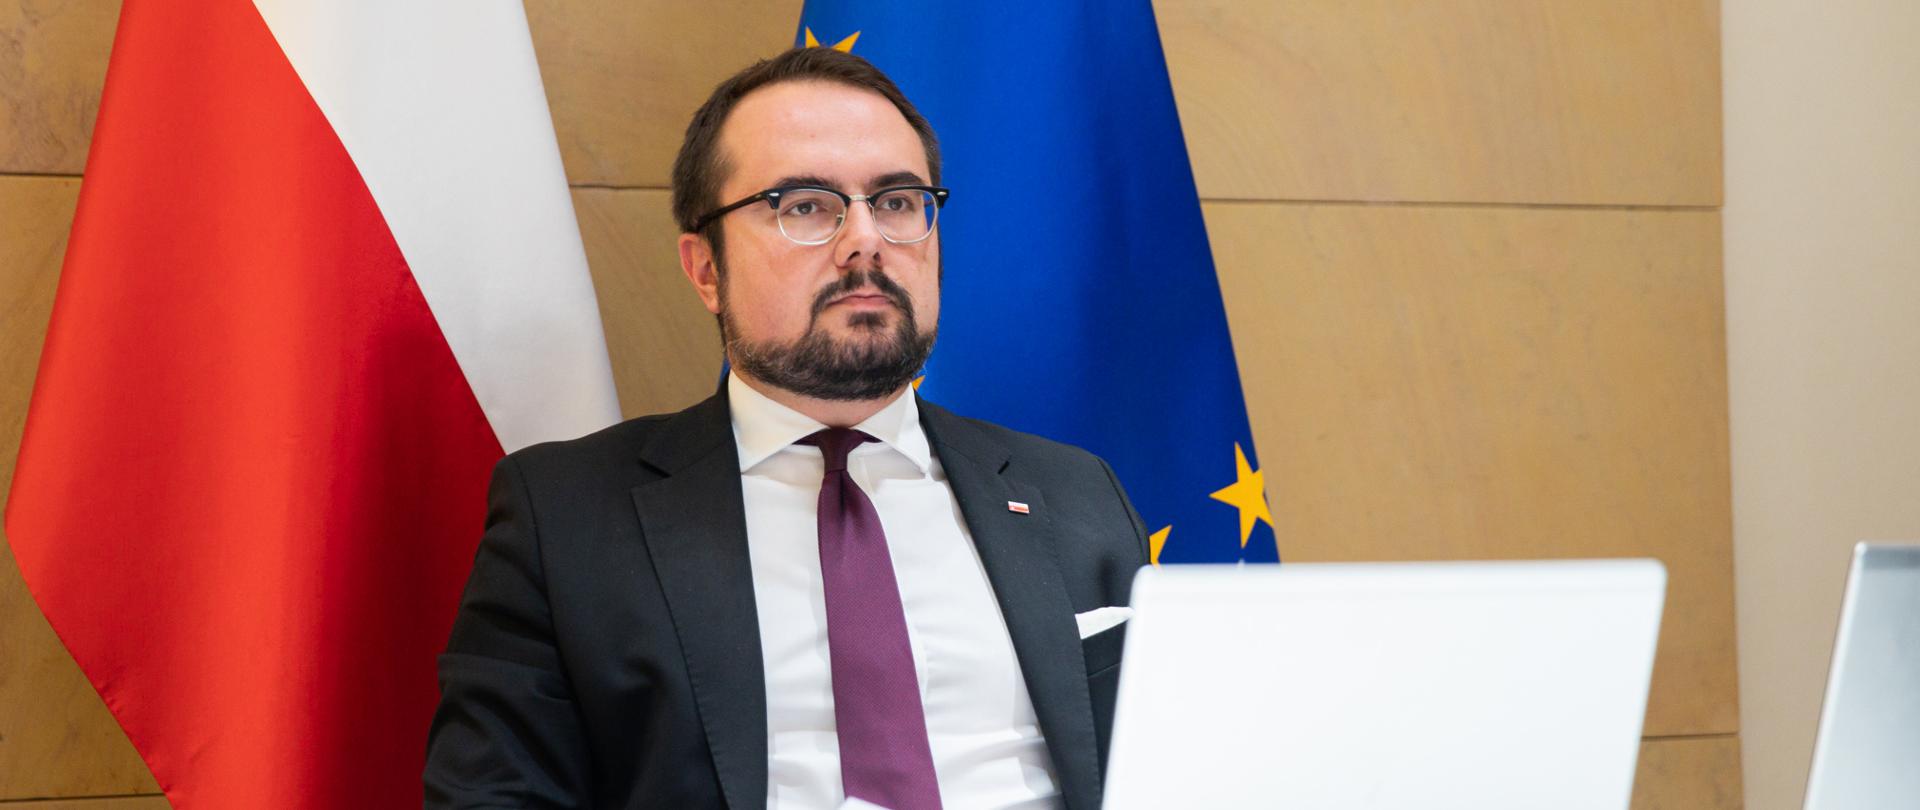 Wiceminister Paweł Jabłoński wziął udział w spotkaniu ministrów ds. współpracy rozwojowej państw UE